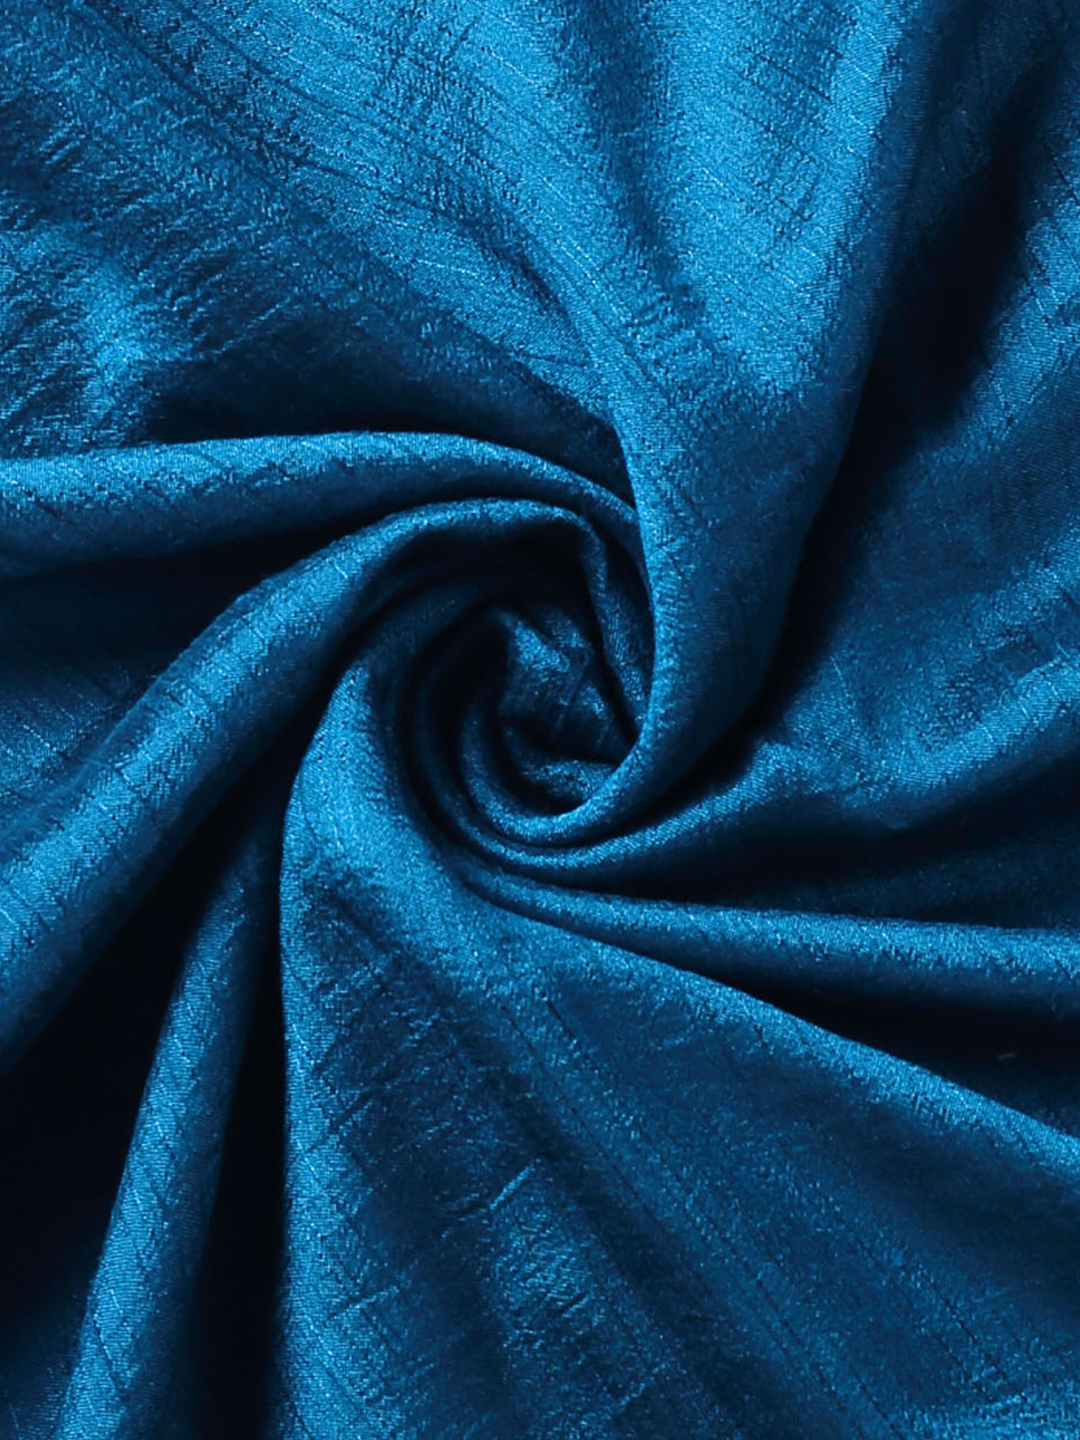 Peacock Blue Nysa Silk Fabric